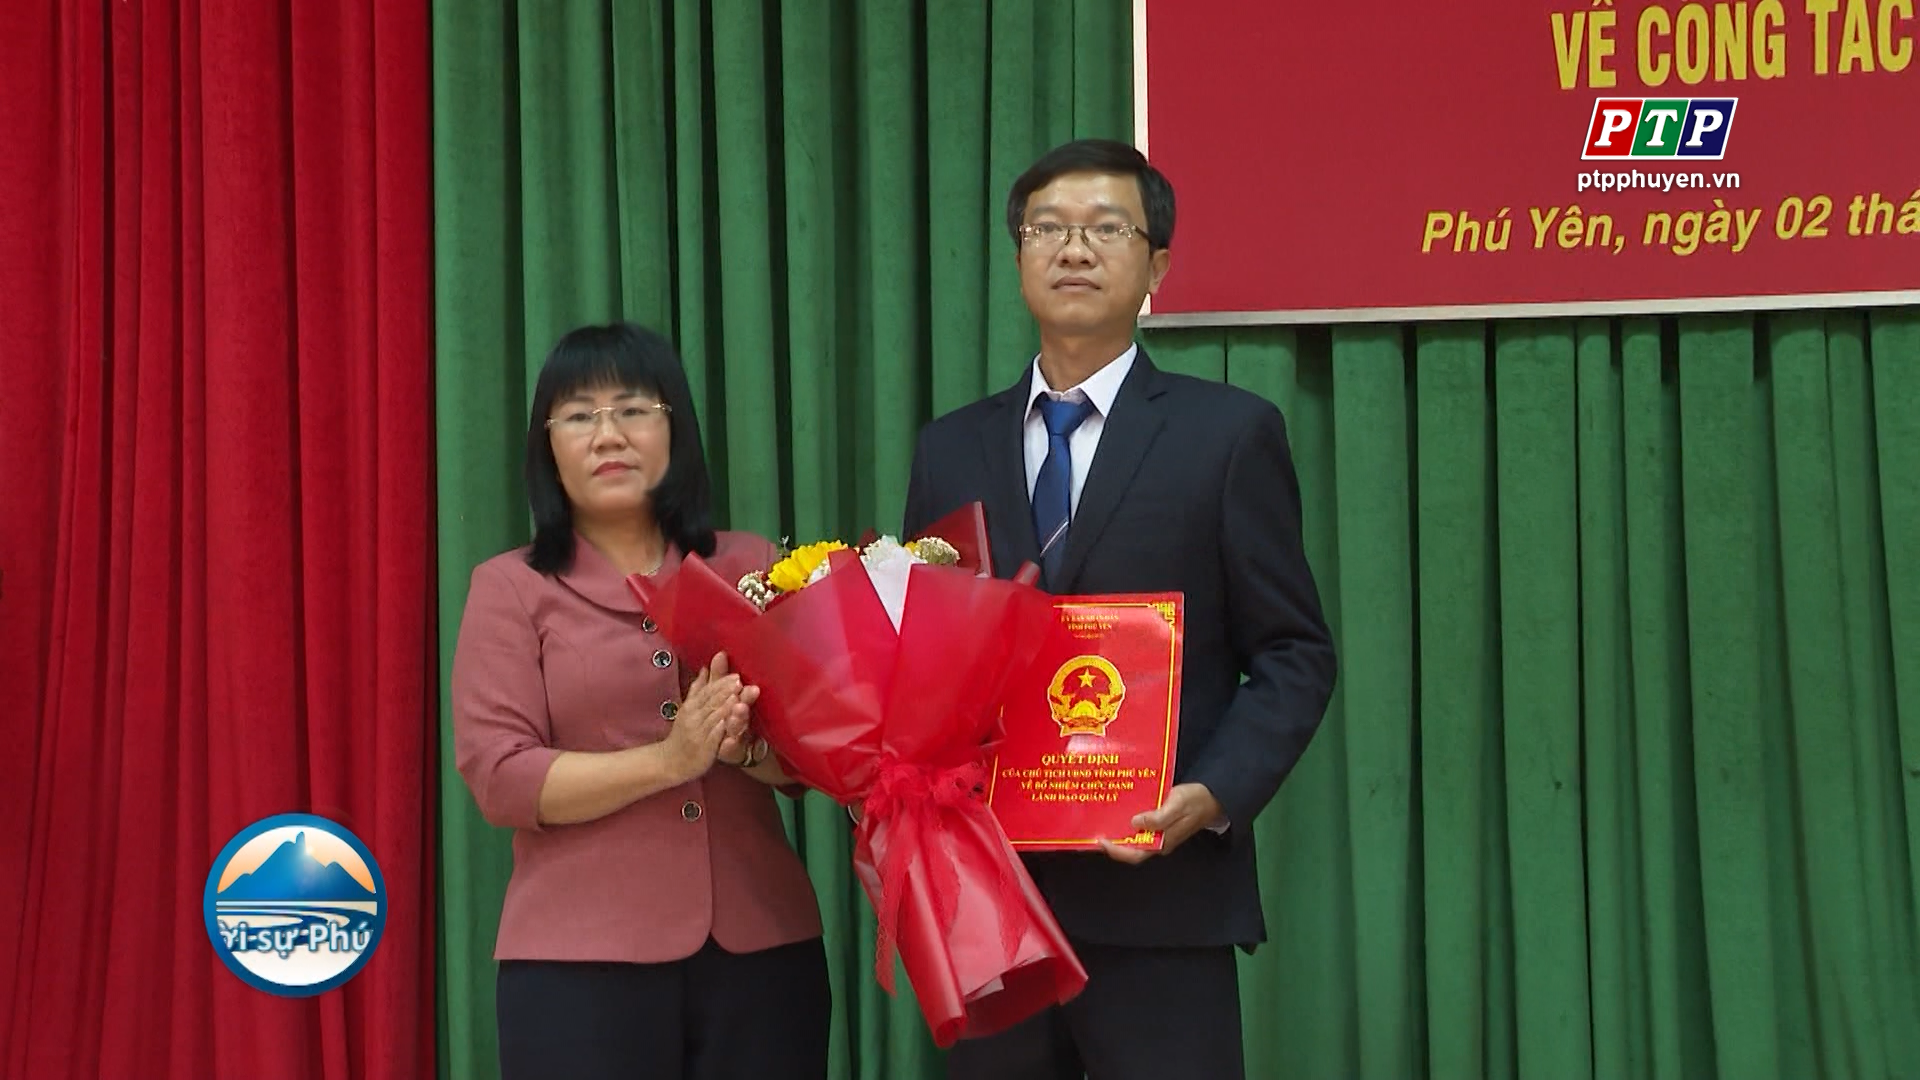 Ông Nguyễn Hữu Toàn được bổ nhiệm làm Phó Giám đốc Sở Tài Chính